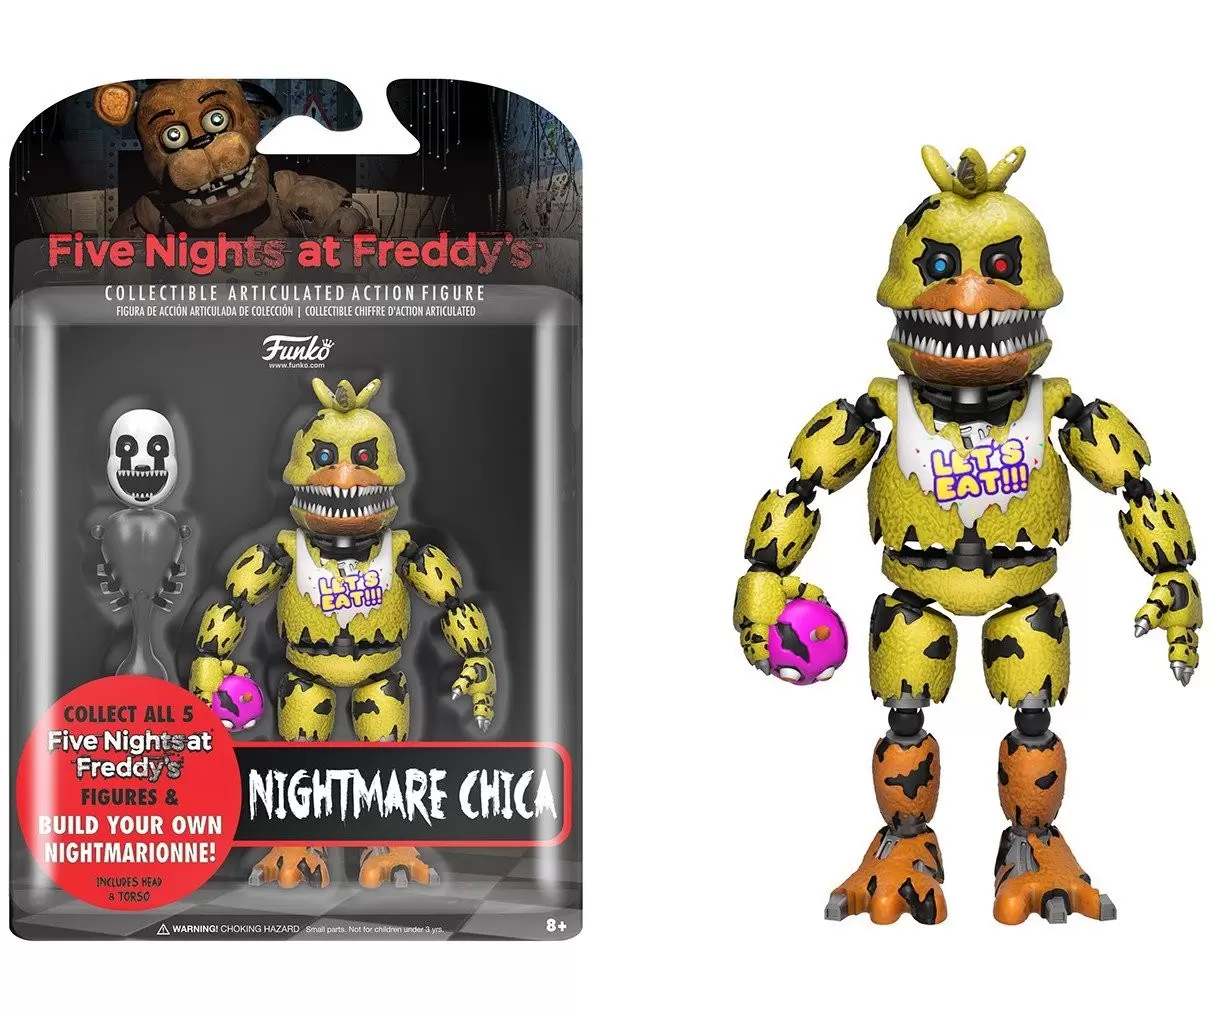 FNAF Nightmare Freddy #111 Funko Pop for Sale in Philadelphia, PA - OfferUp